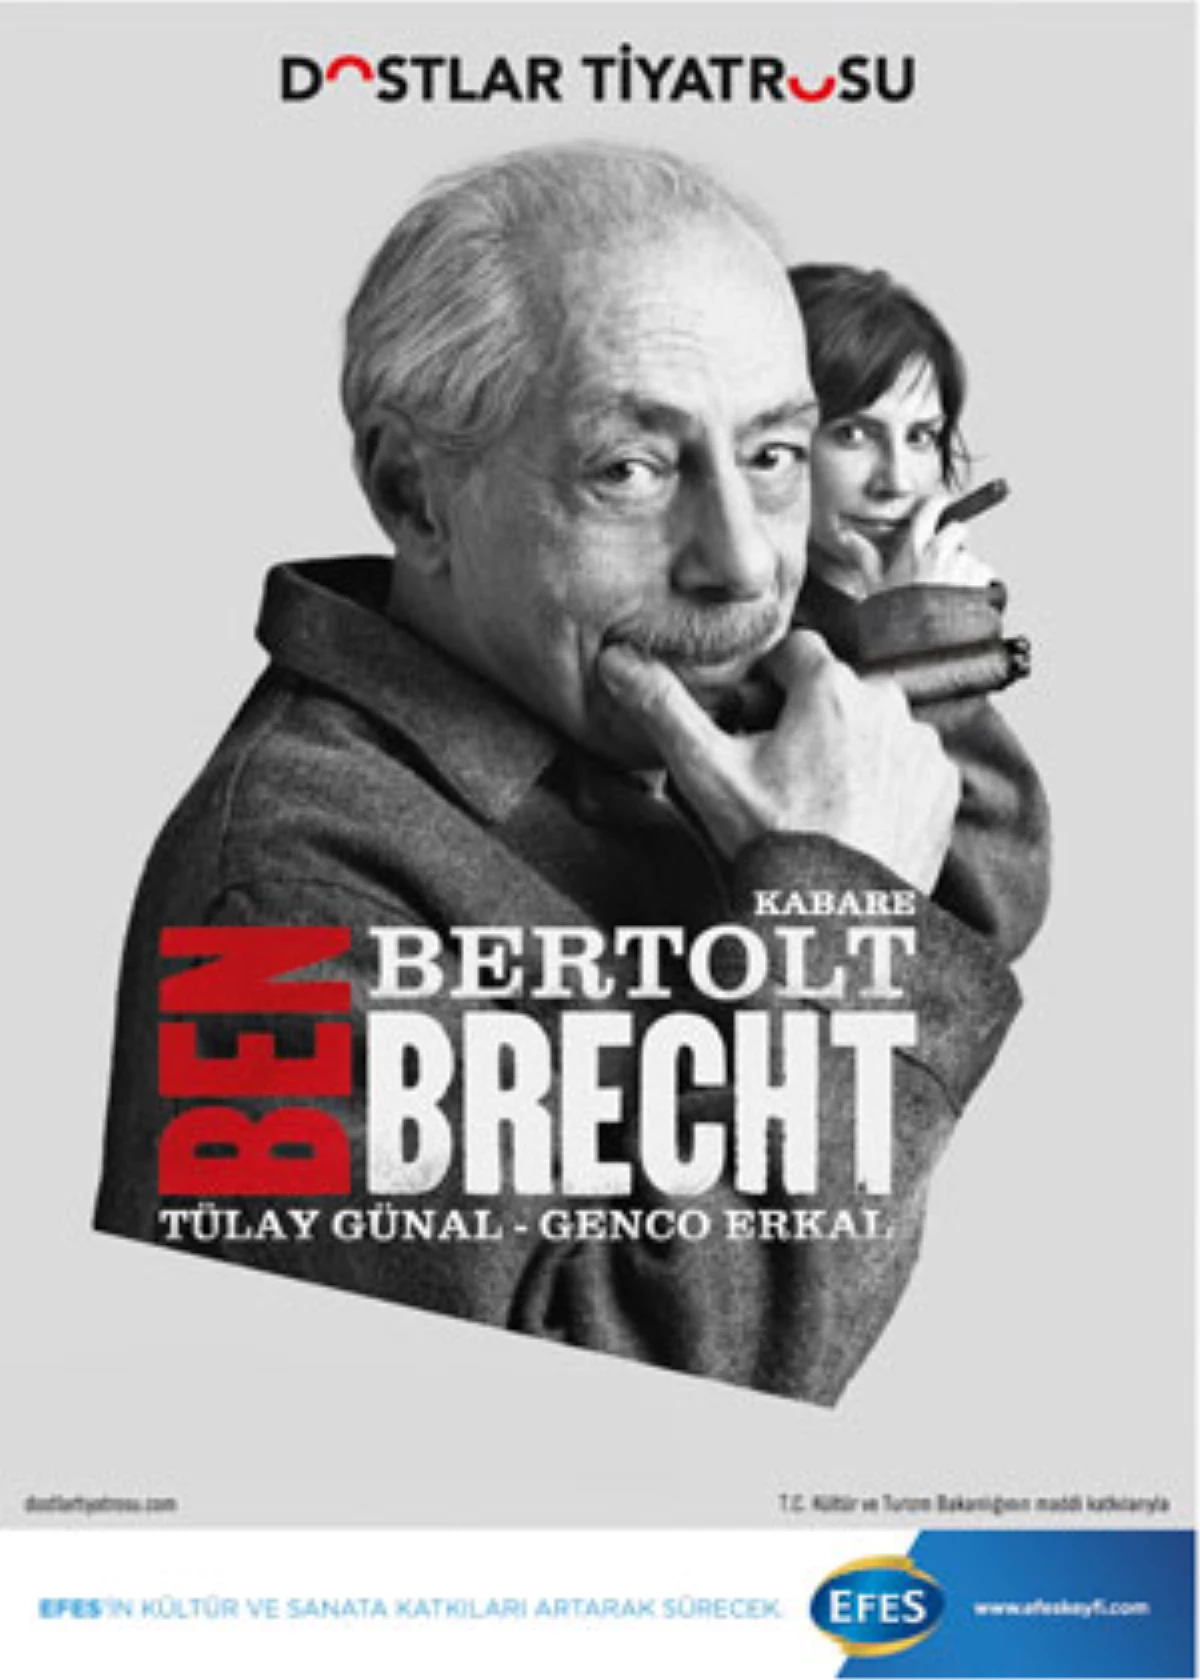 Kabare Oyunu ile Şimdi Brecht Zamanı!